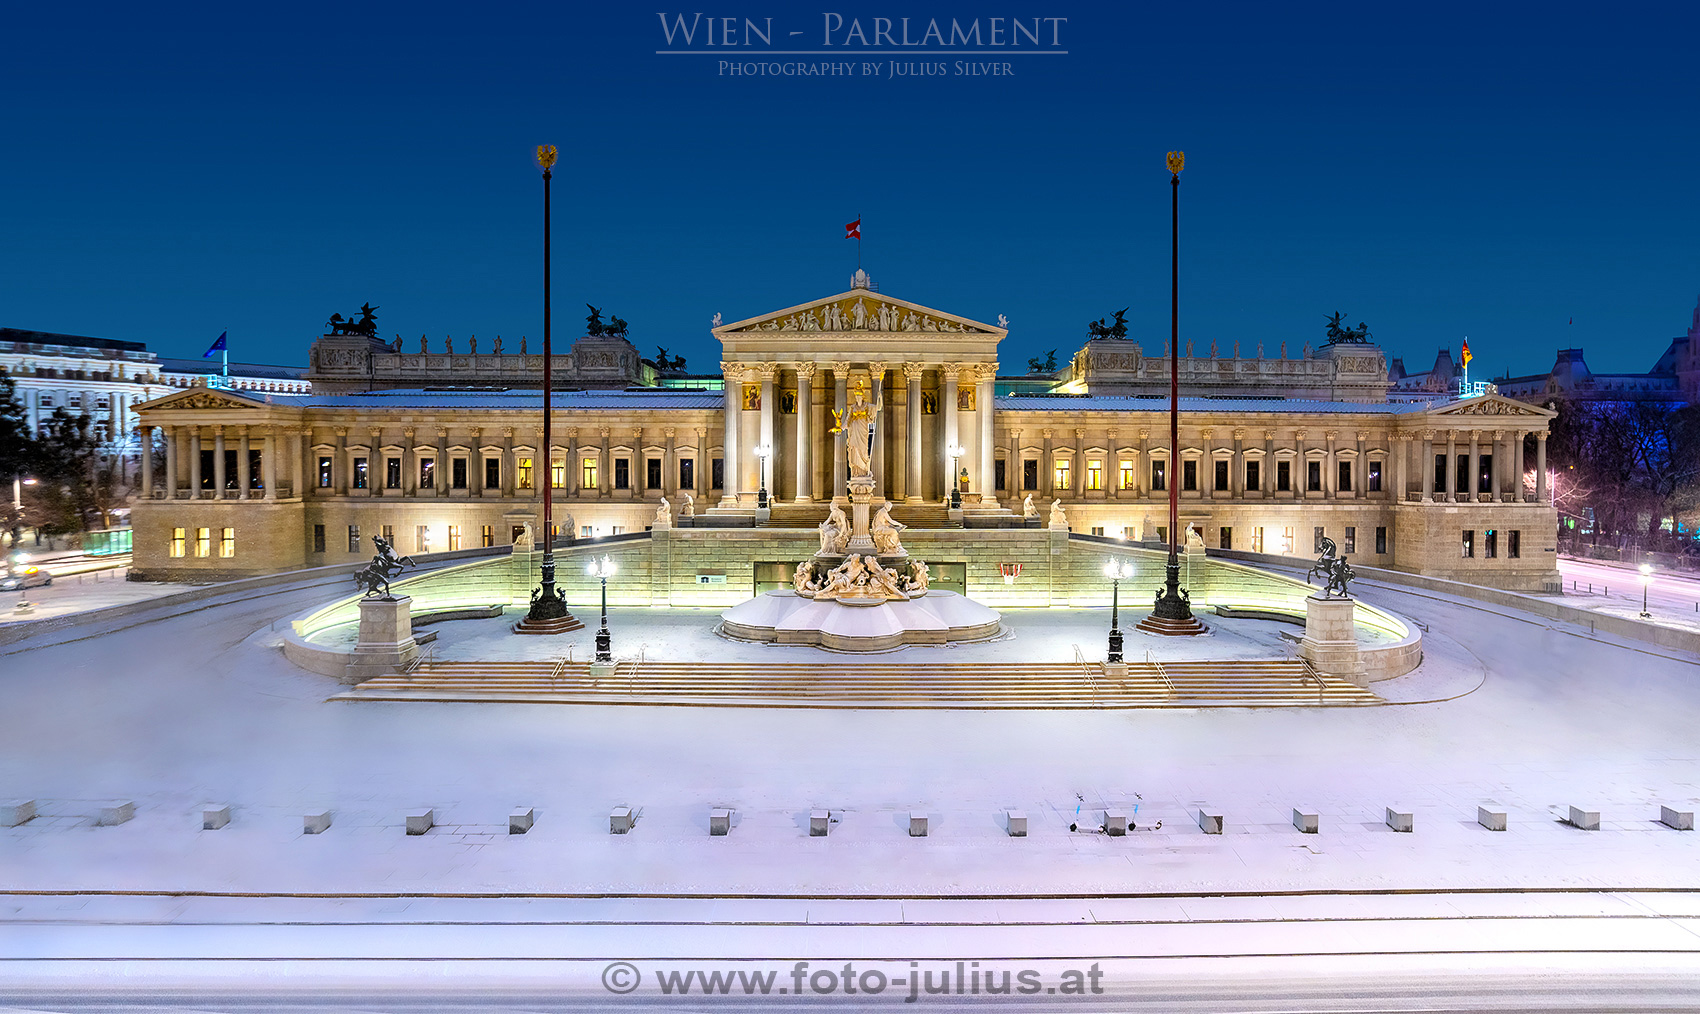 W_7873a_Parlament_Wien.jpg, 602kB